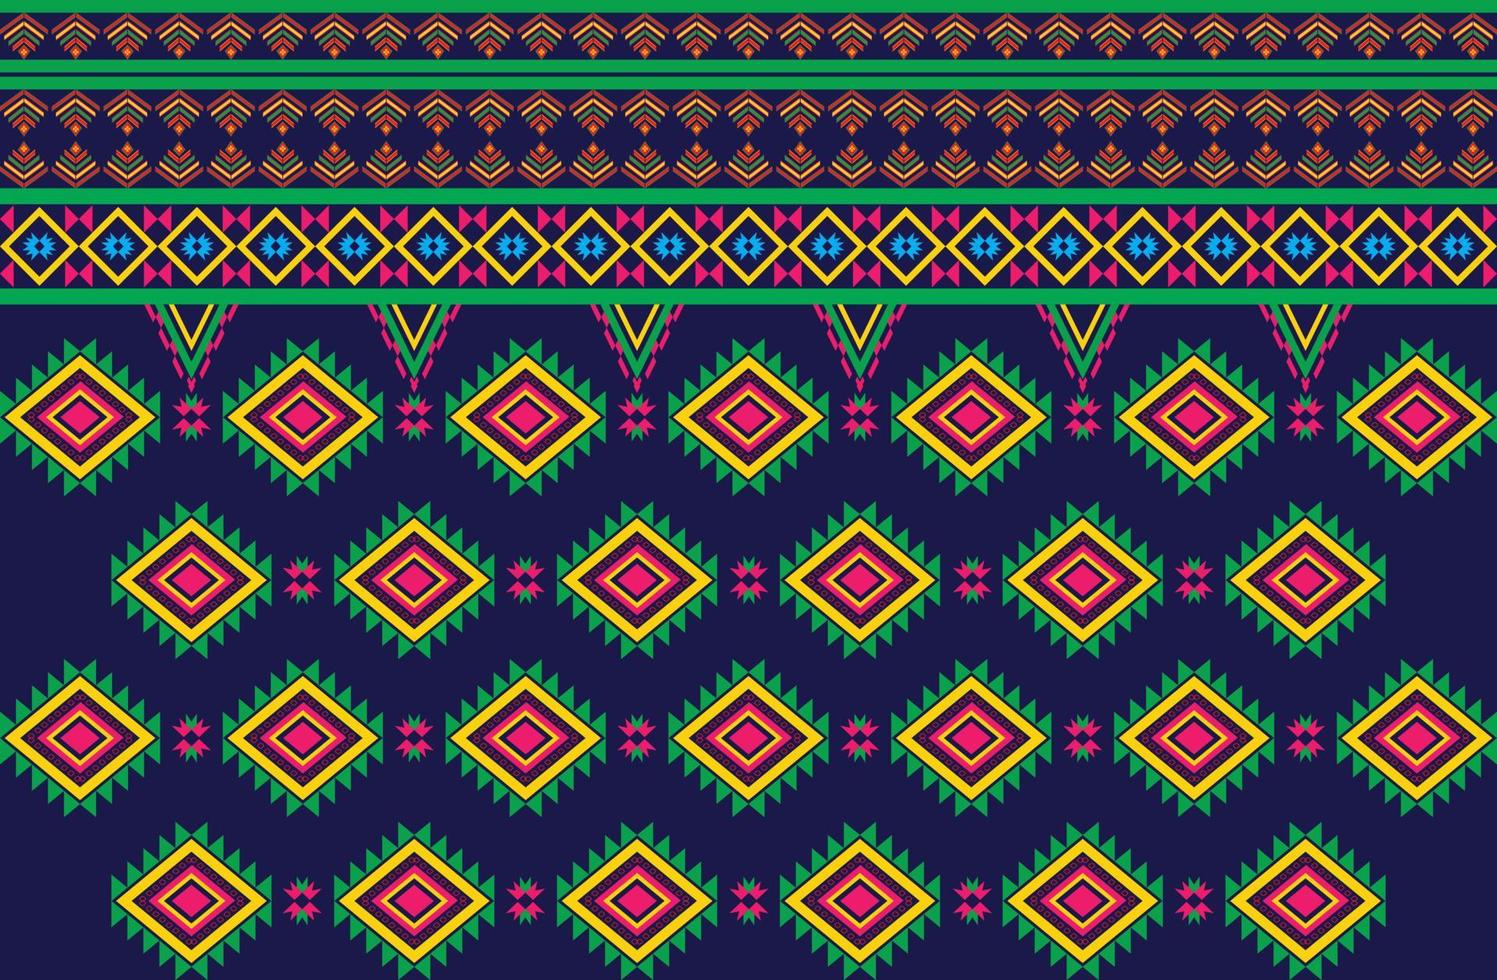 padrão de desenho geométrico tecido étnico oriental tradicional para estilo de bordado, cortina, fundo, tapete, papel de parede, pano, embrulho, batik, tecido, ilustração vetorial. vetor